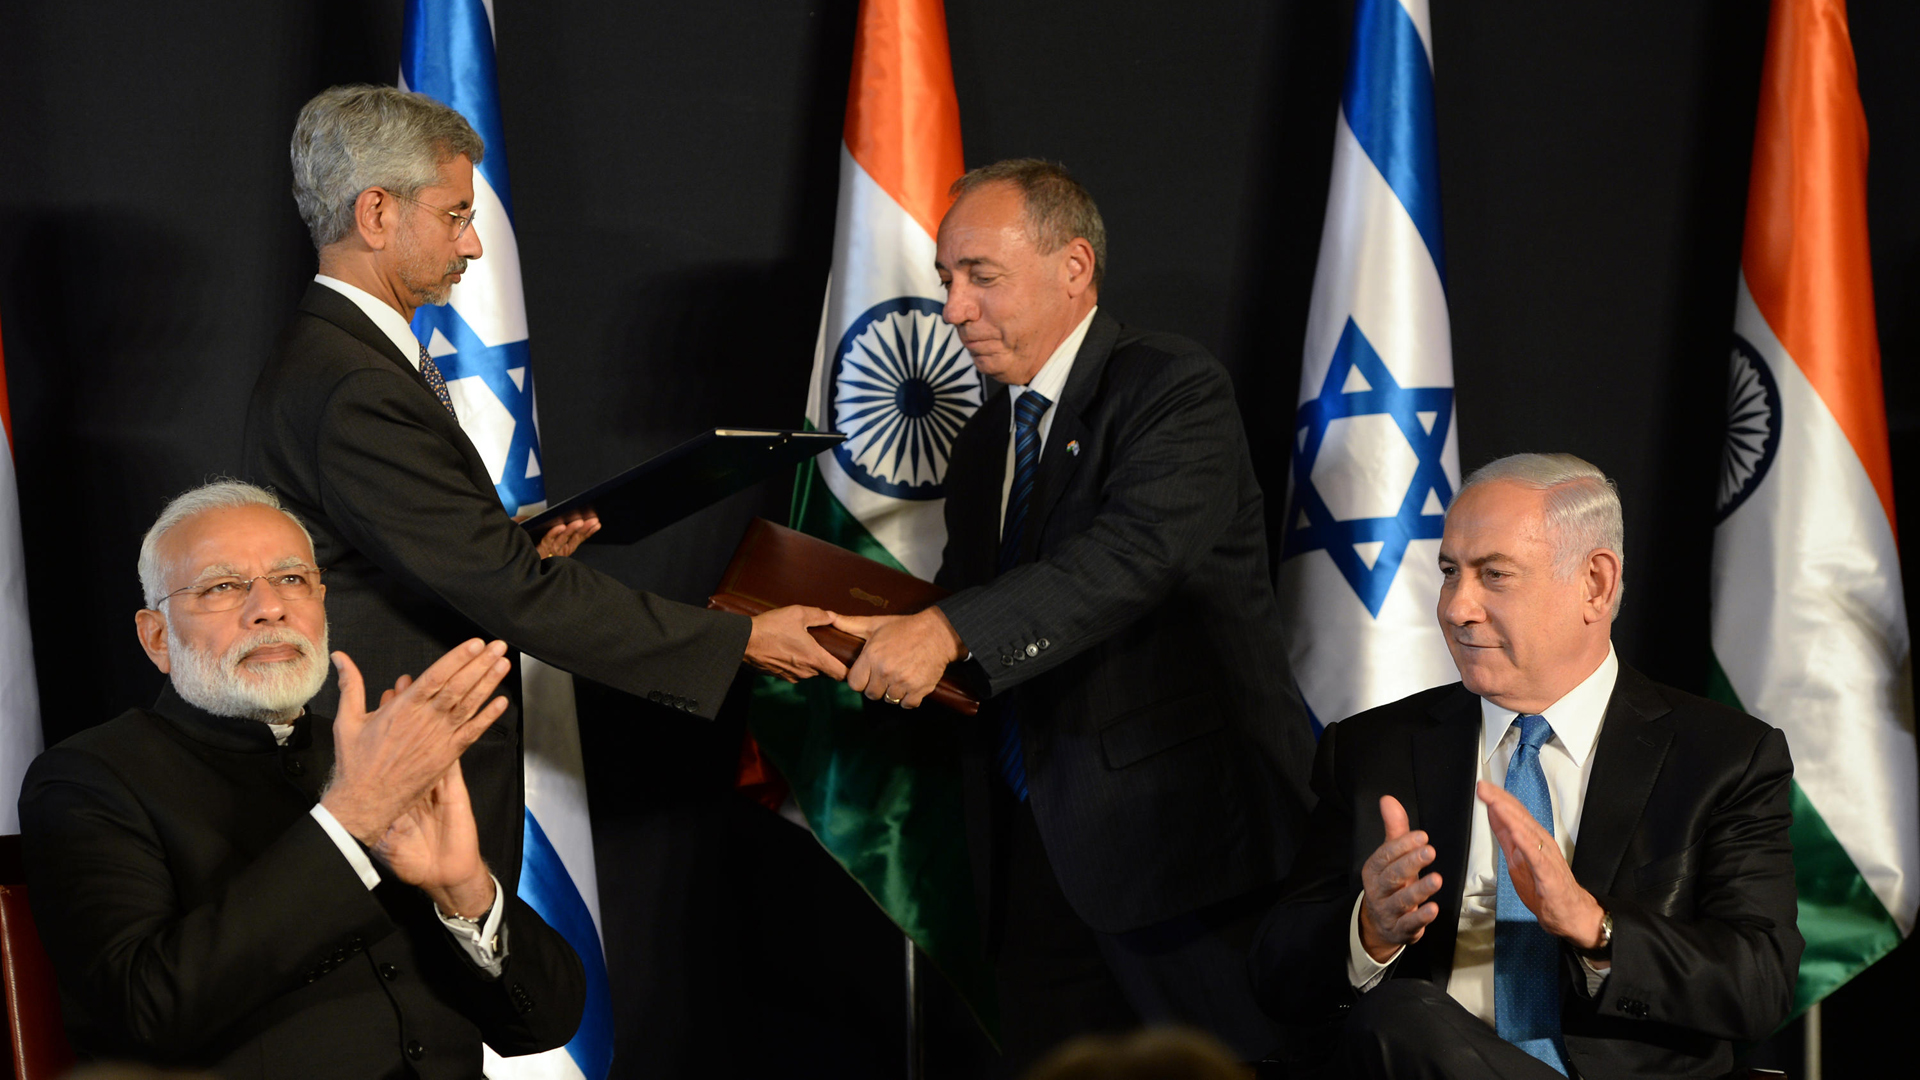 Bei den unterzeichneten Verträgen zwischen Israel und Indien geht es unter anderem um einen gemeinsamen, 35 Millionen Euro großen Industrie-Fonds